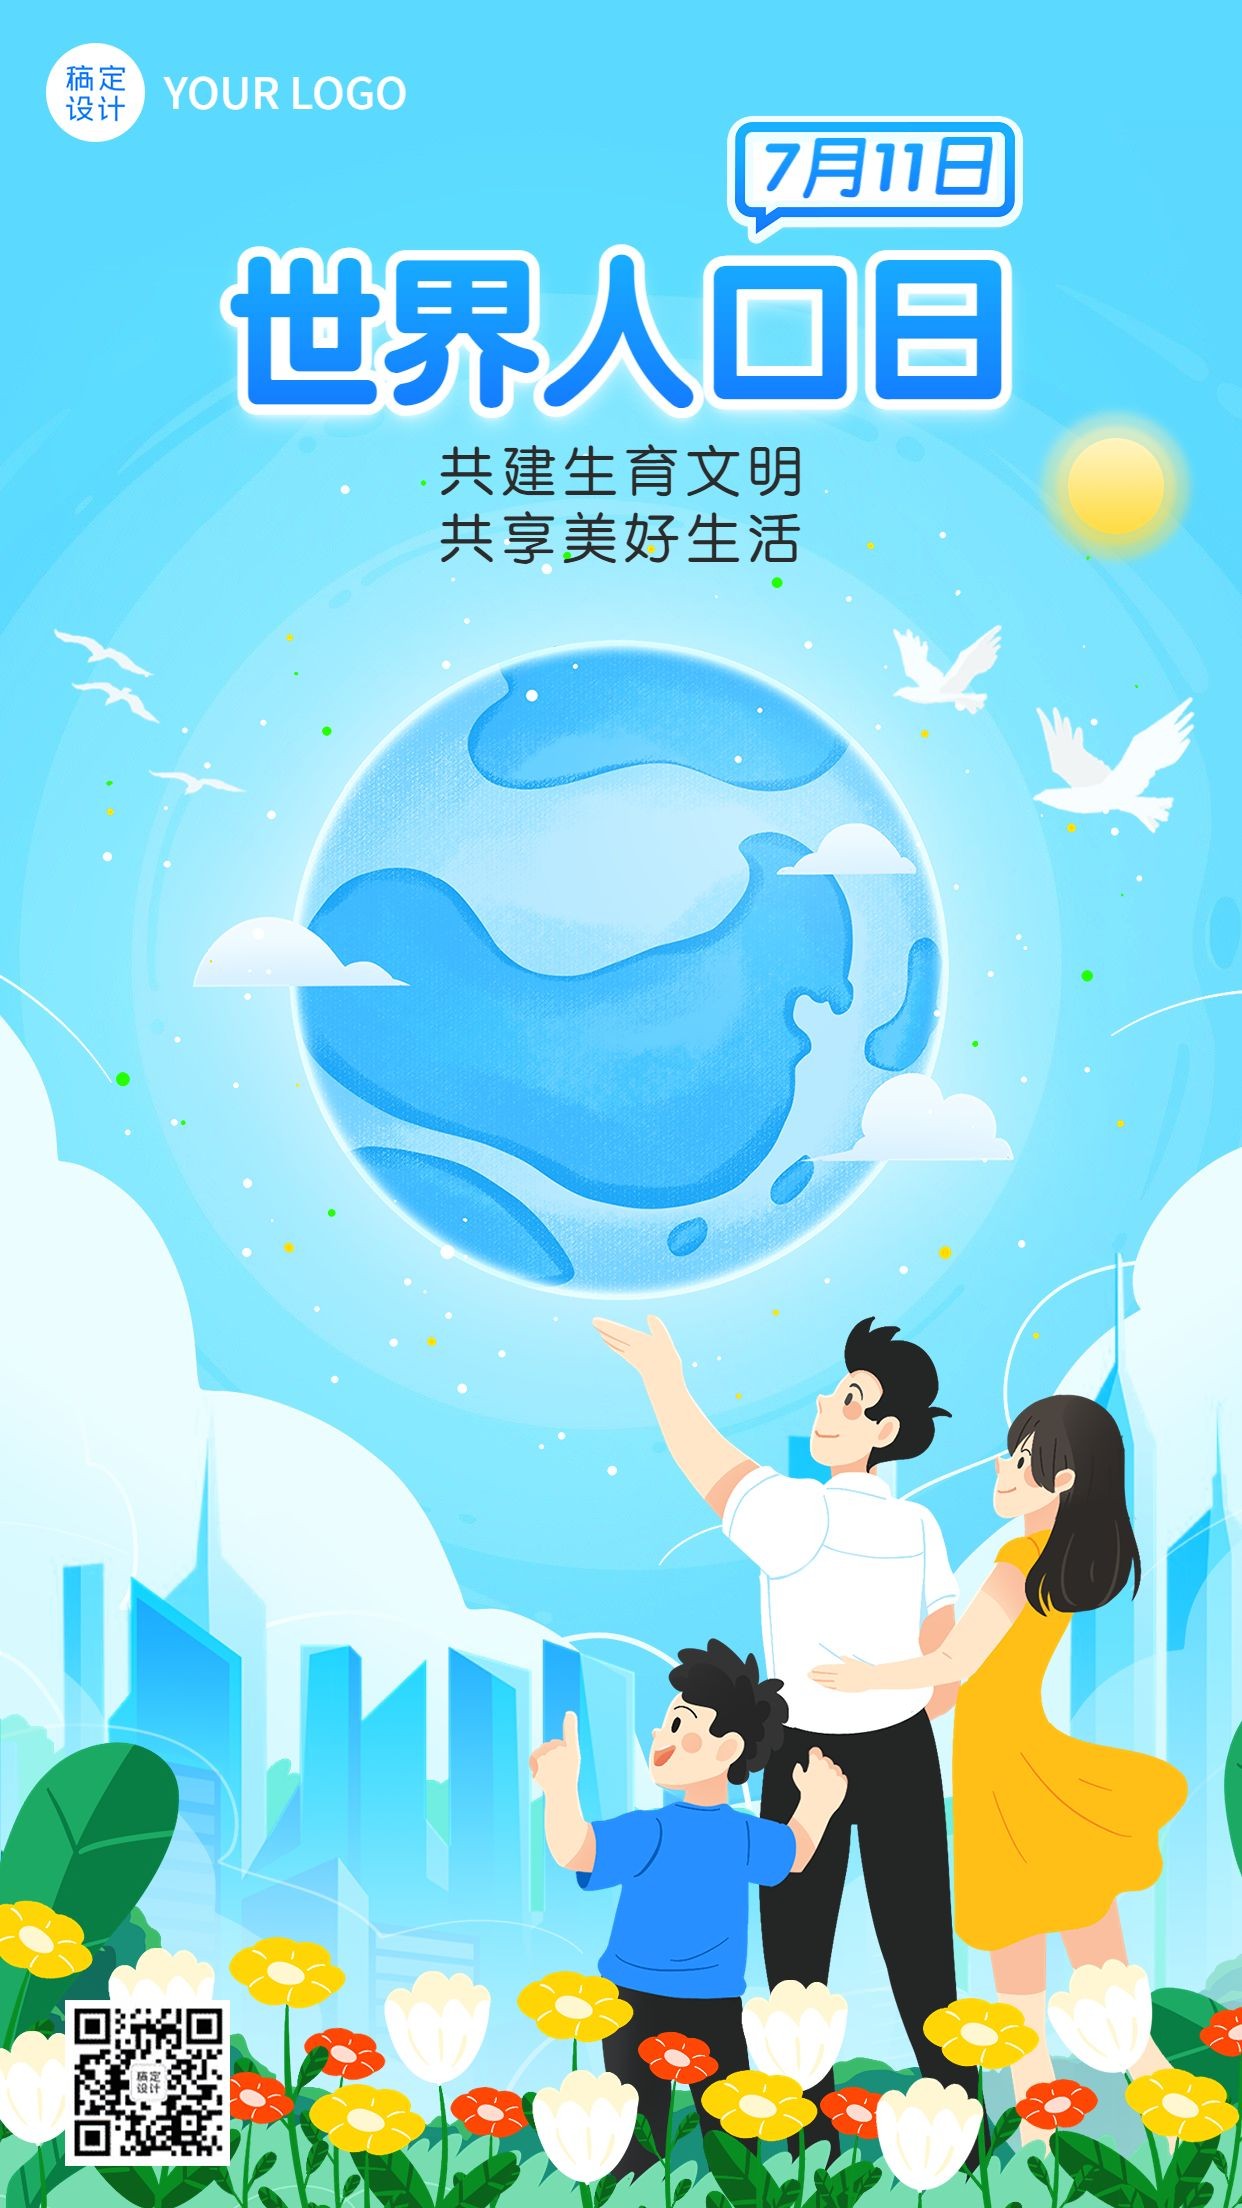 世界人口日节日宣传插画手机海报